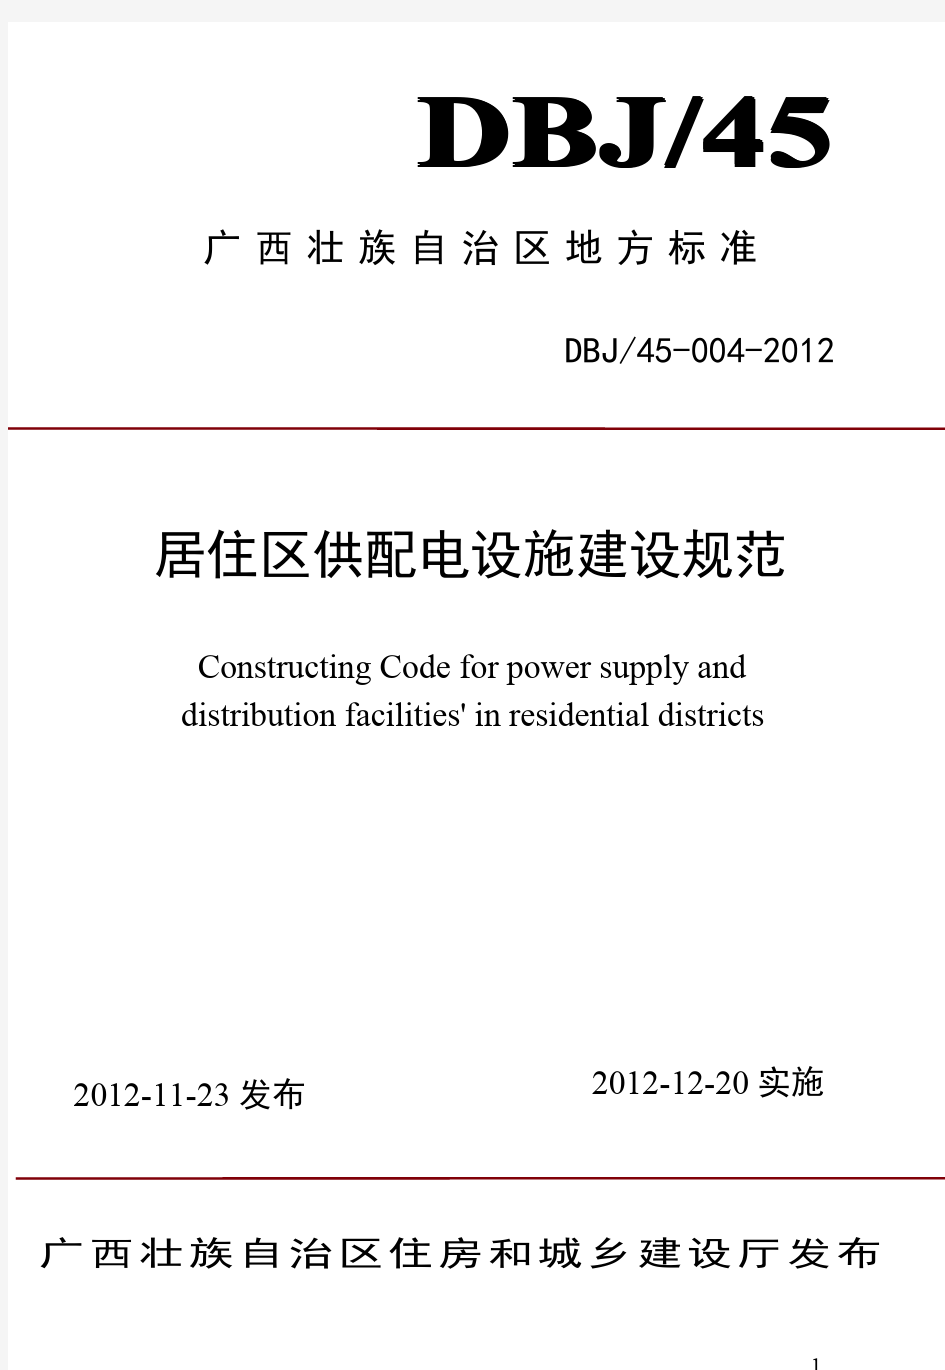 DBJ45-004-2012广西《居住区供配电设施建设规范》桂建标[2012]77号